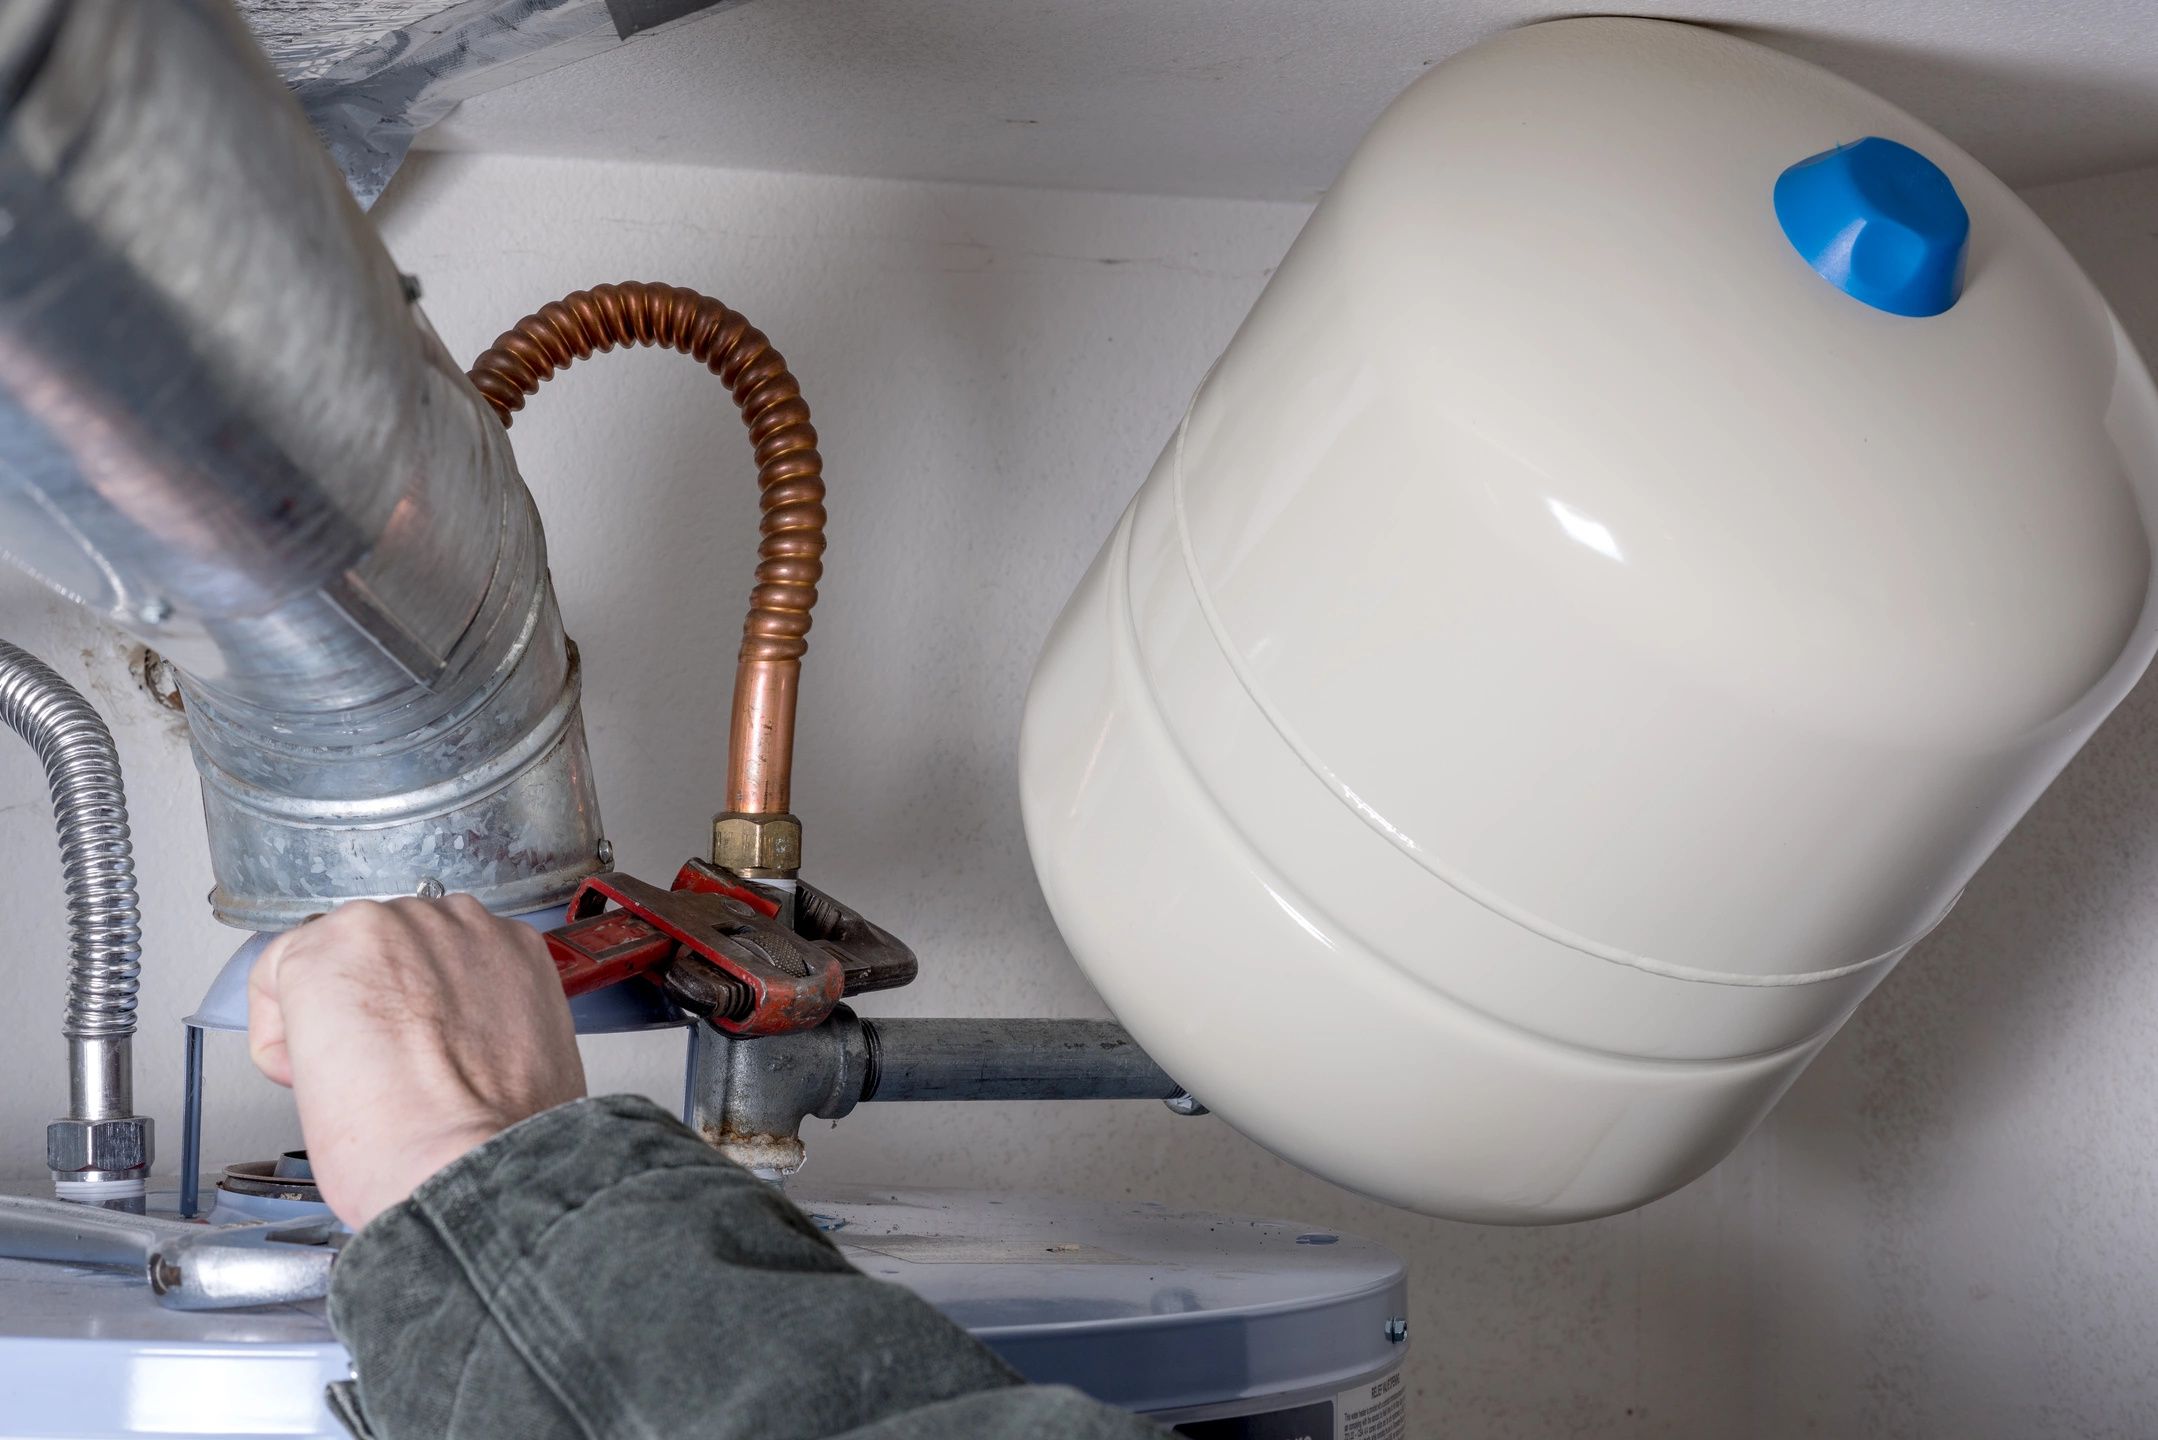 heater water accidents repair heaters plumber avoid